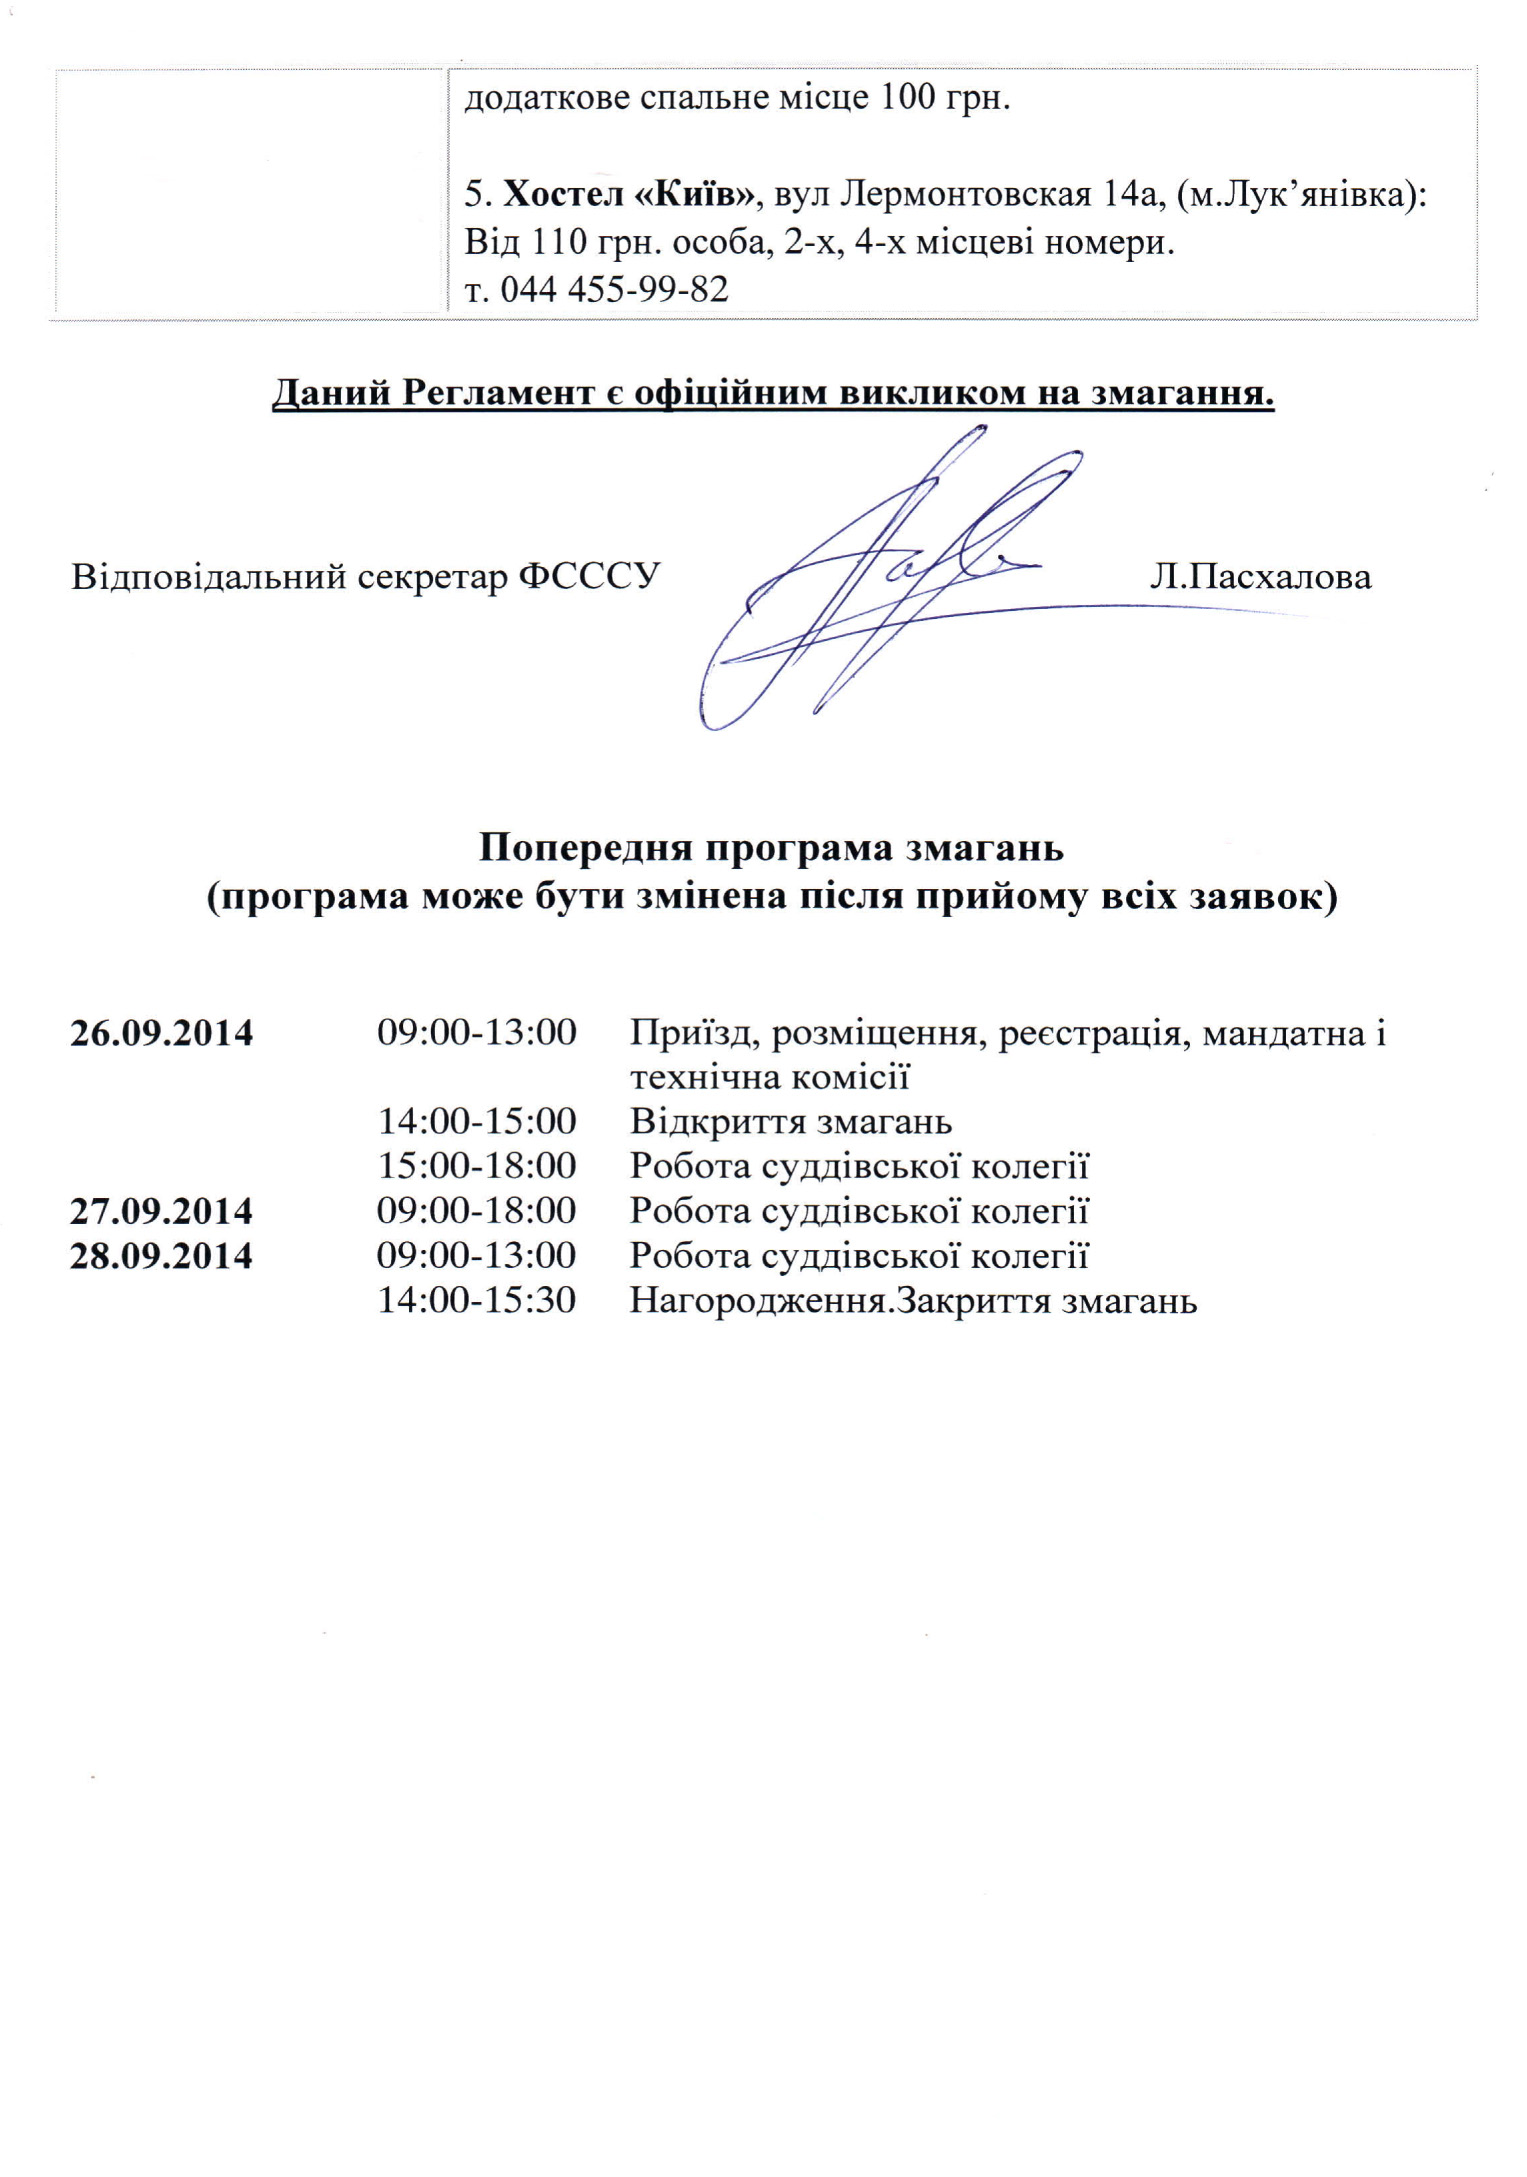 Reglament_Kubok_Kieva_2014_S3.jpg